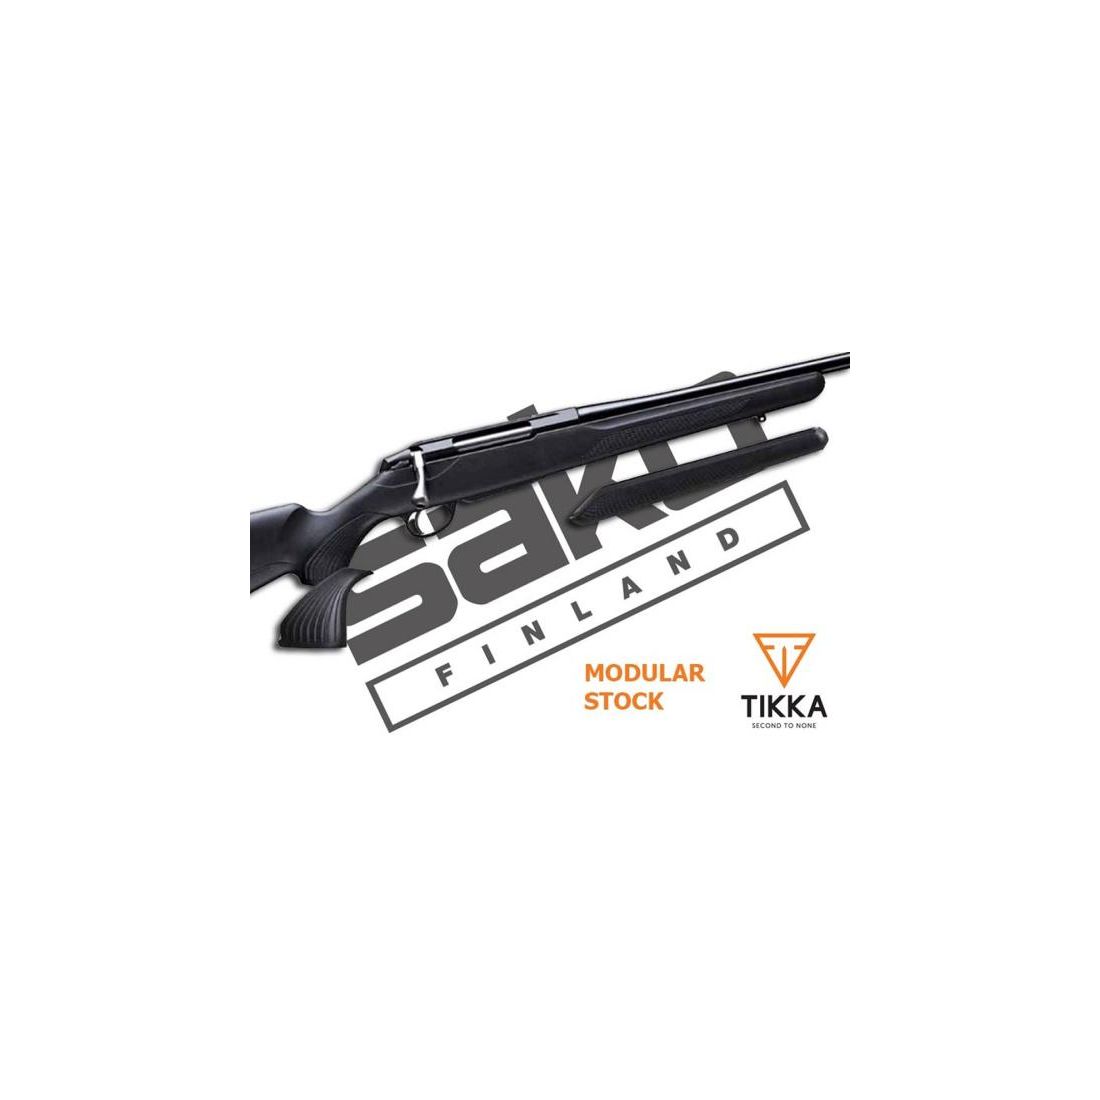 TIKKA Tuning/Ersatzteil f. Langwaffe Pistolengriff Varmint / steil f. T3x   -Kunststoff /schwarz